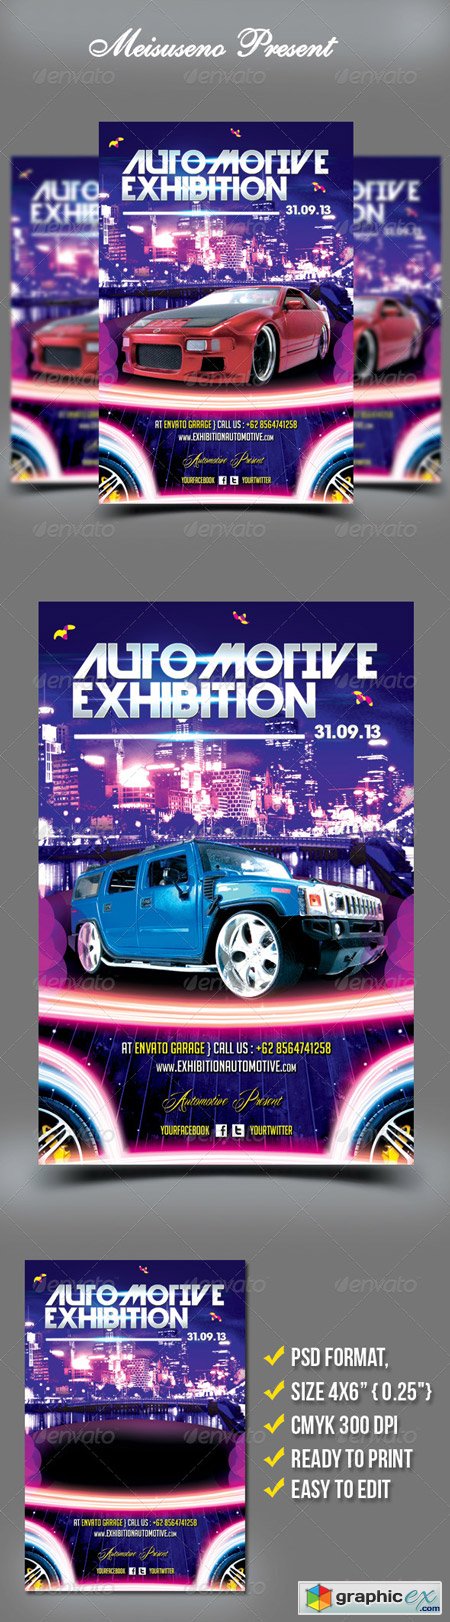 Automotive Exhibition Flyer Template